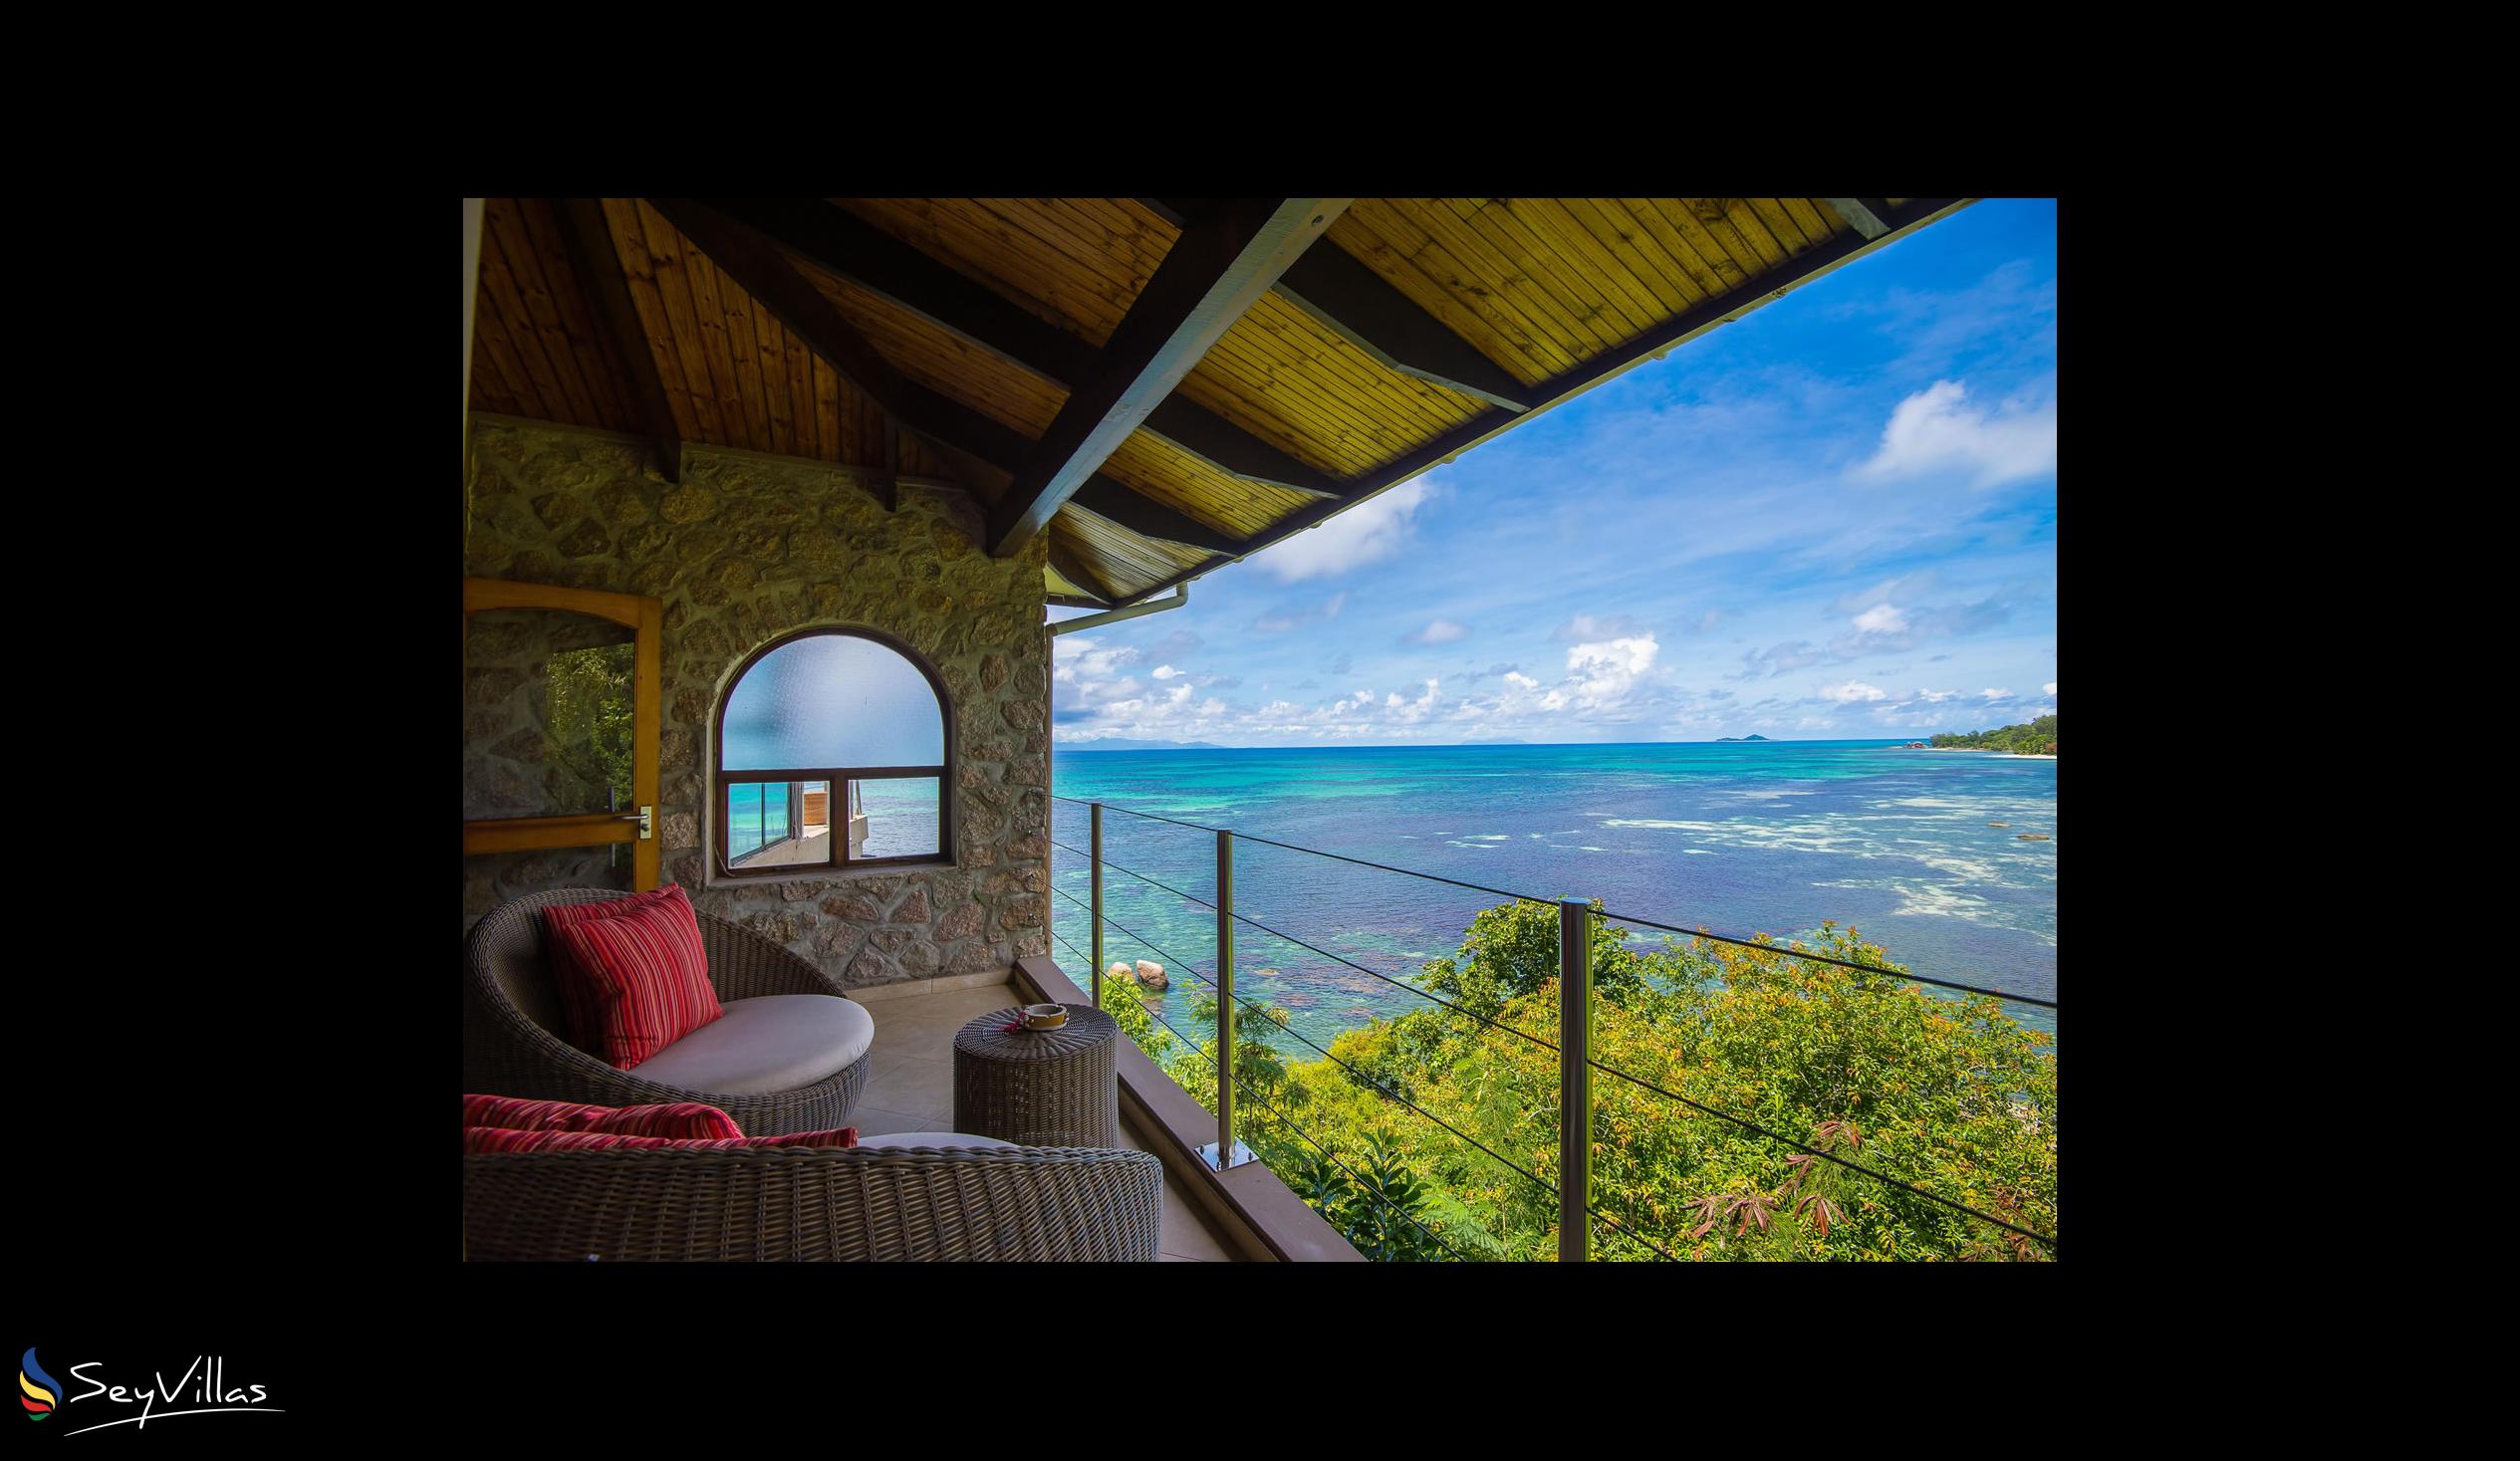 Foto 89: Coco de Mer & Black Parrot Suites - Black Parrot Junior Suite - Praslin (Seychelles)